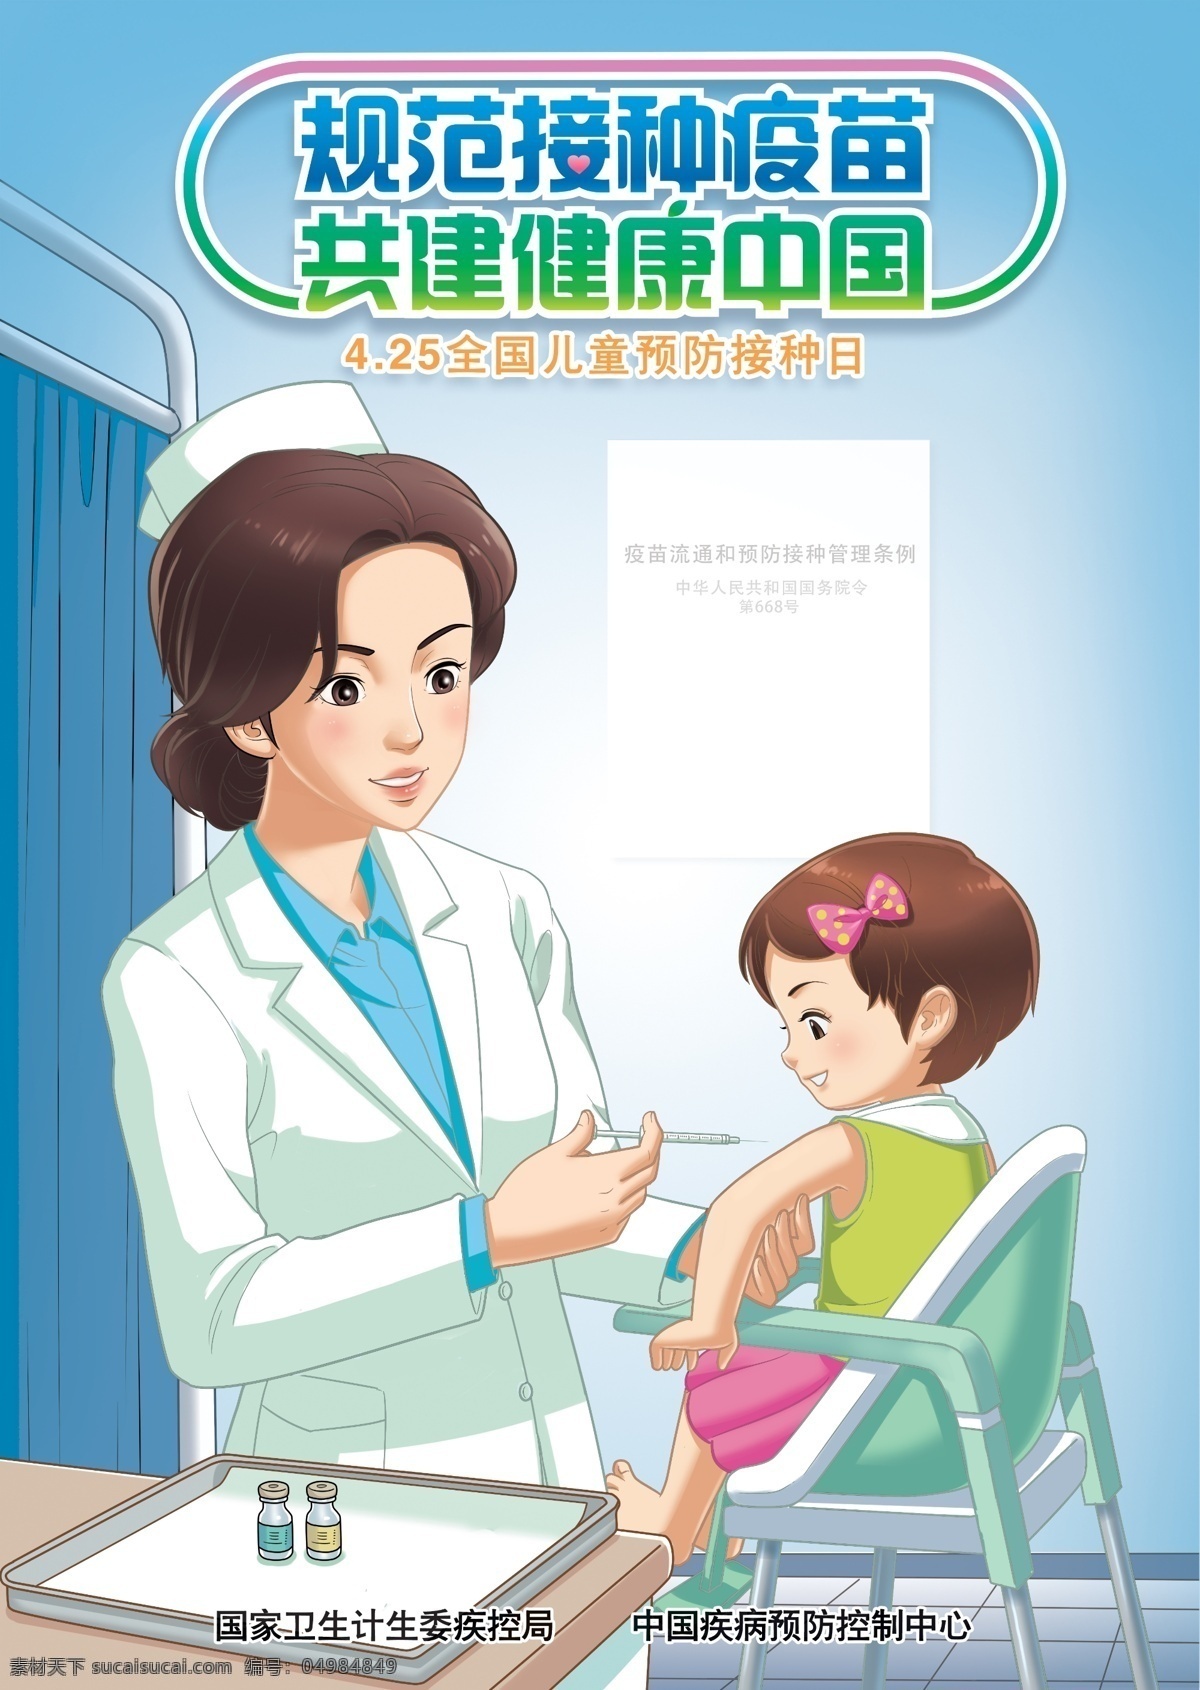 规范接种疫苗 共建健康中国 疫苗接种 预防接种 疫苗 接种 儿童疫苗接种 疾控中心 疾病预防 控制中心 展板模板 源文件 ps分层文件 分层